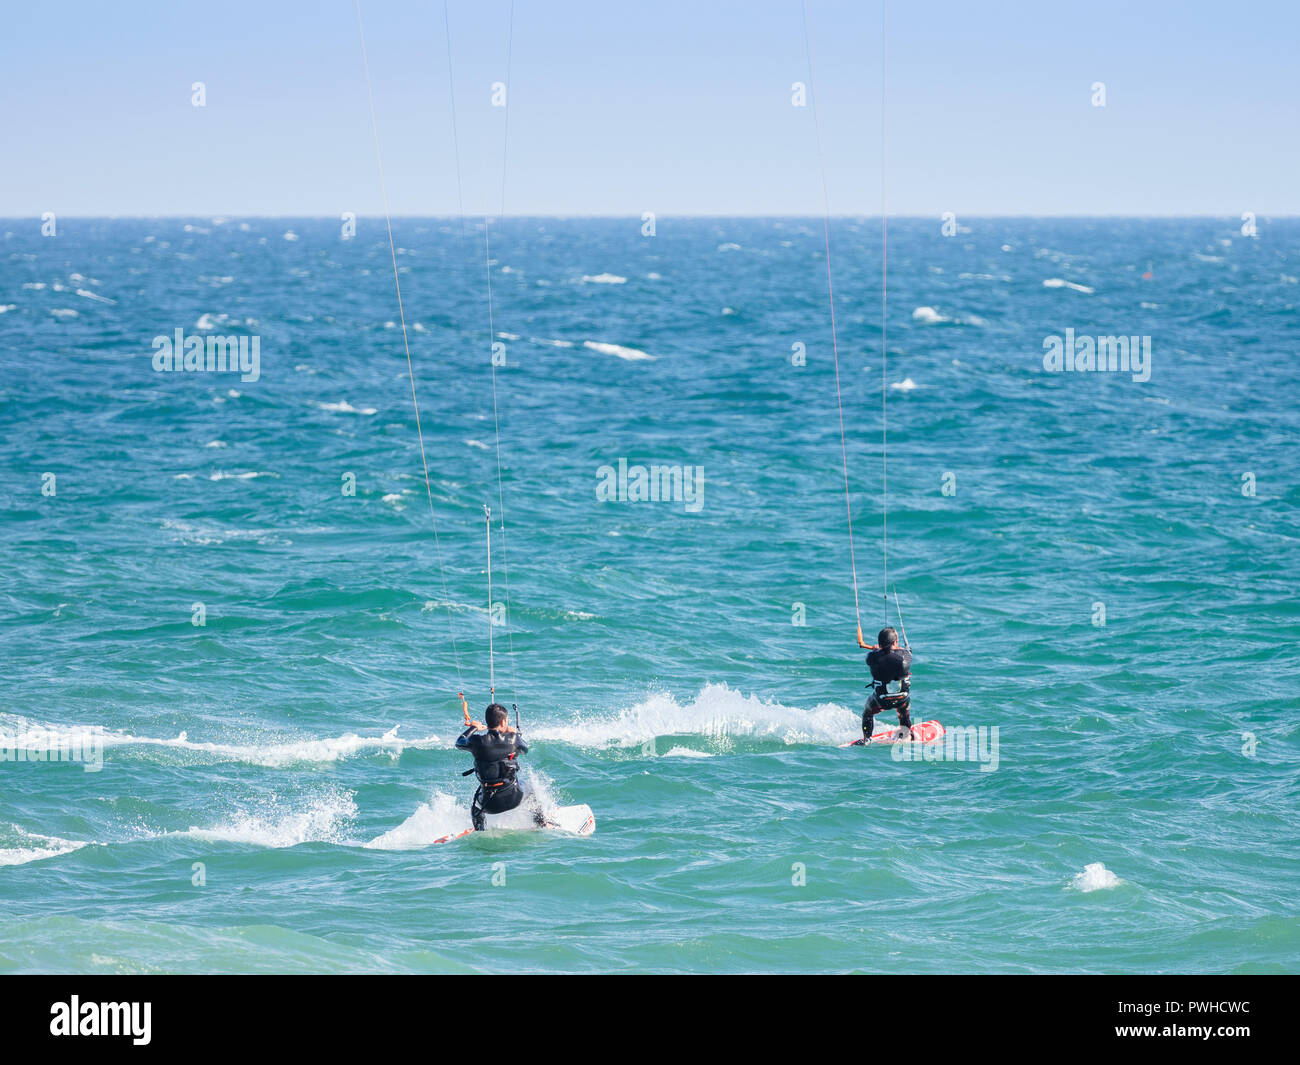 Kite surfers on blue waters of Atlantic Ocean in Algarve, Portugal Stock Photo